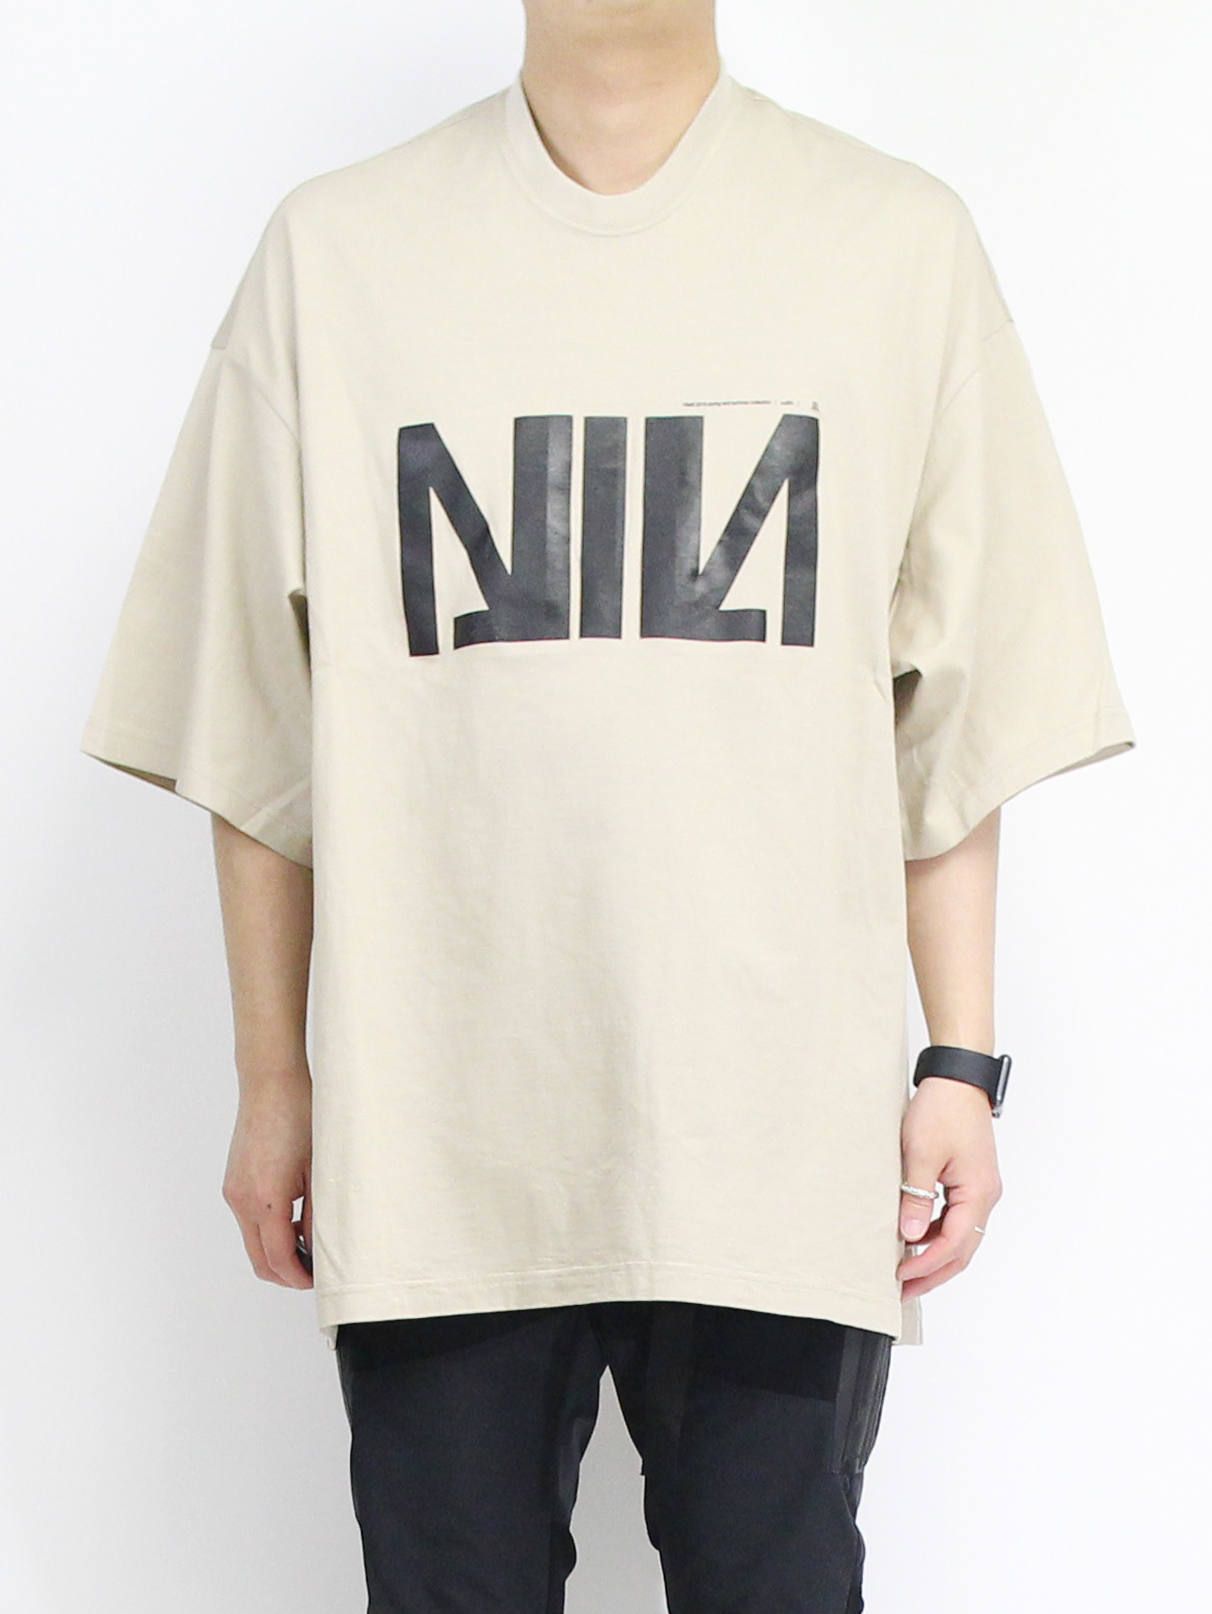 NILoS - ニルズビッグTシャツ - NIL BIG T-SHIRT - white | ADDICT WEB